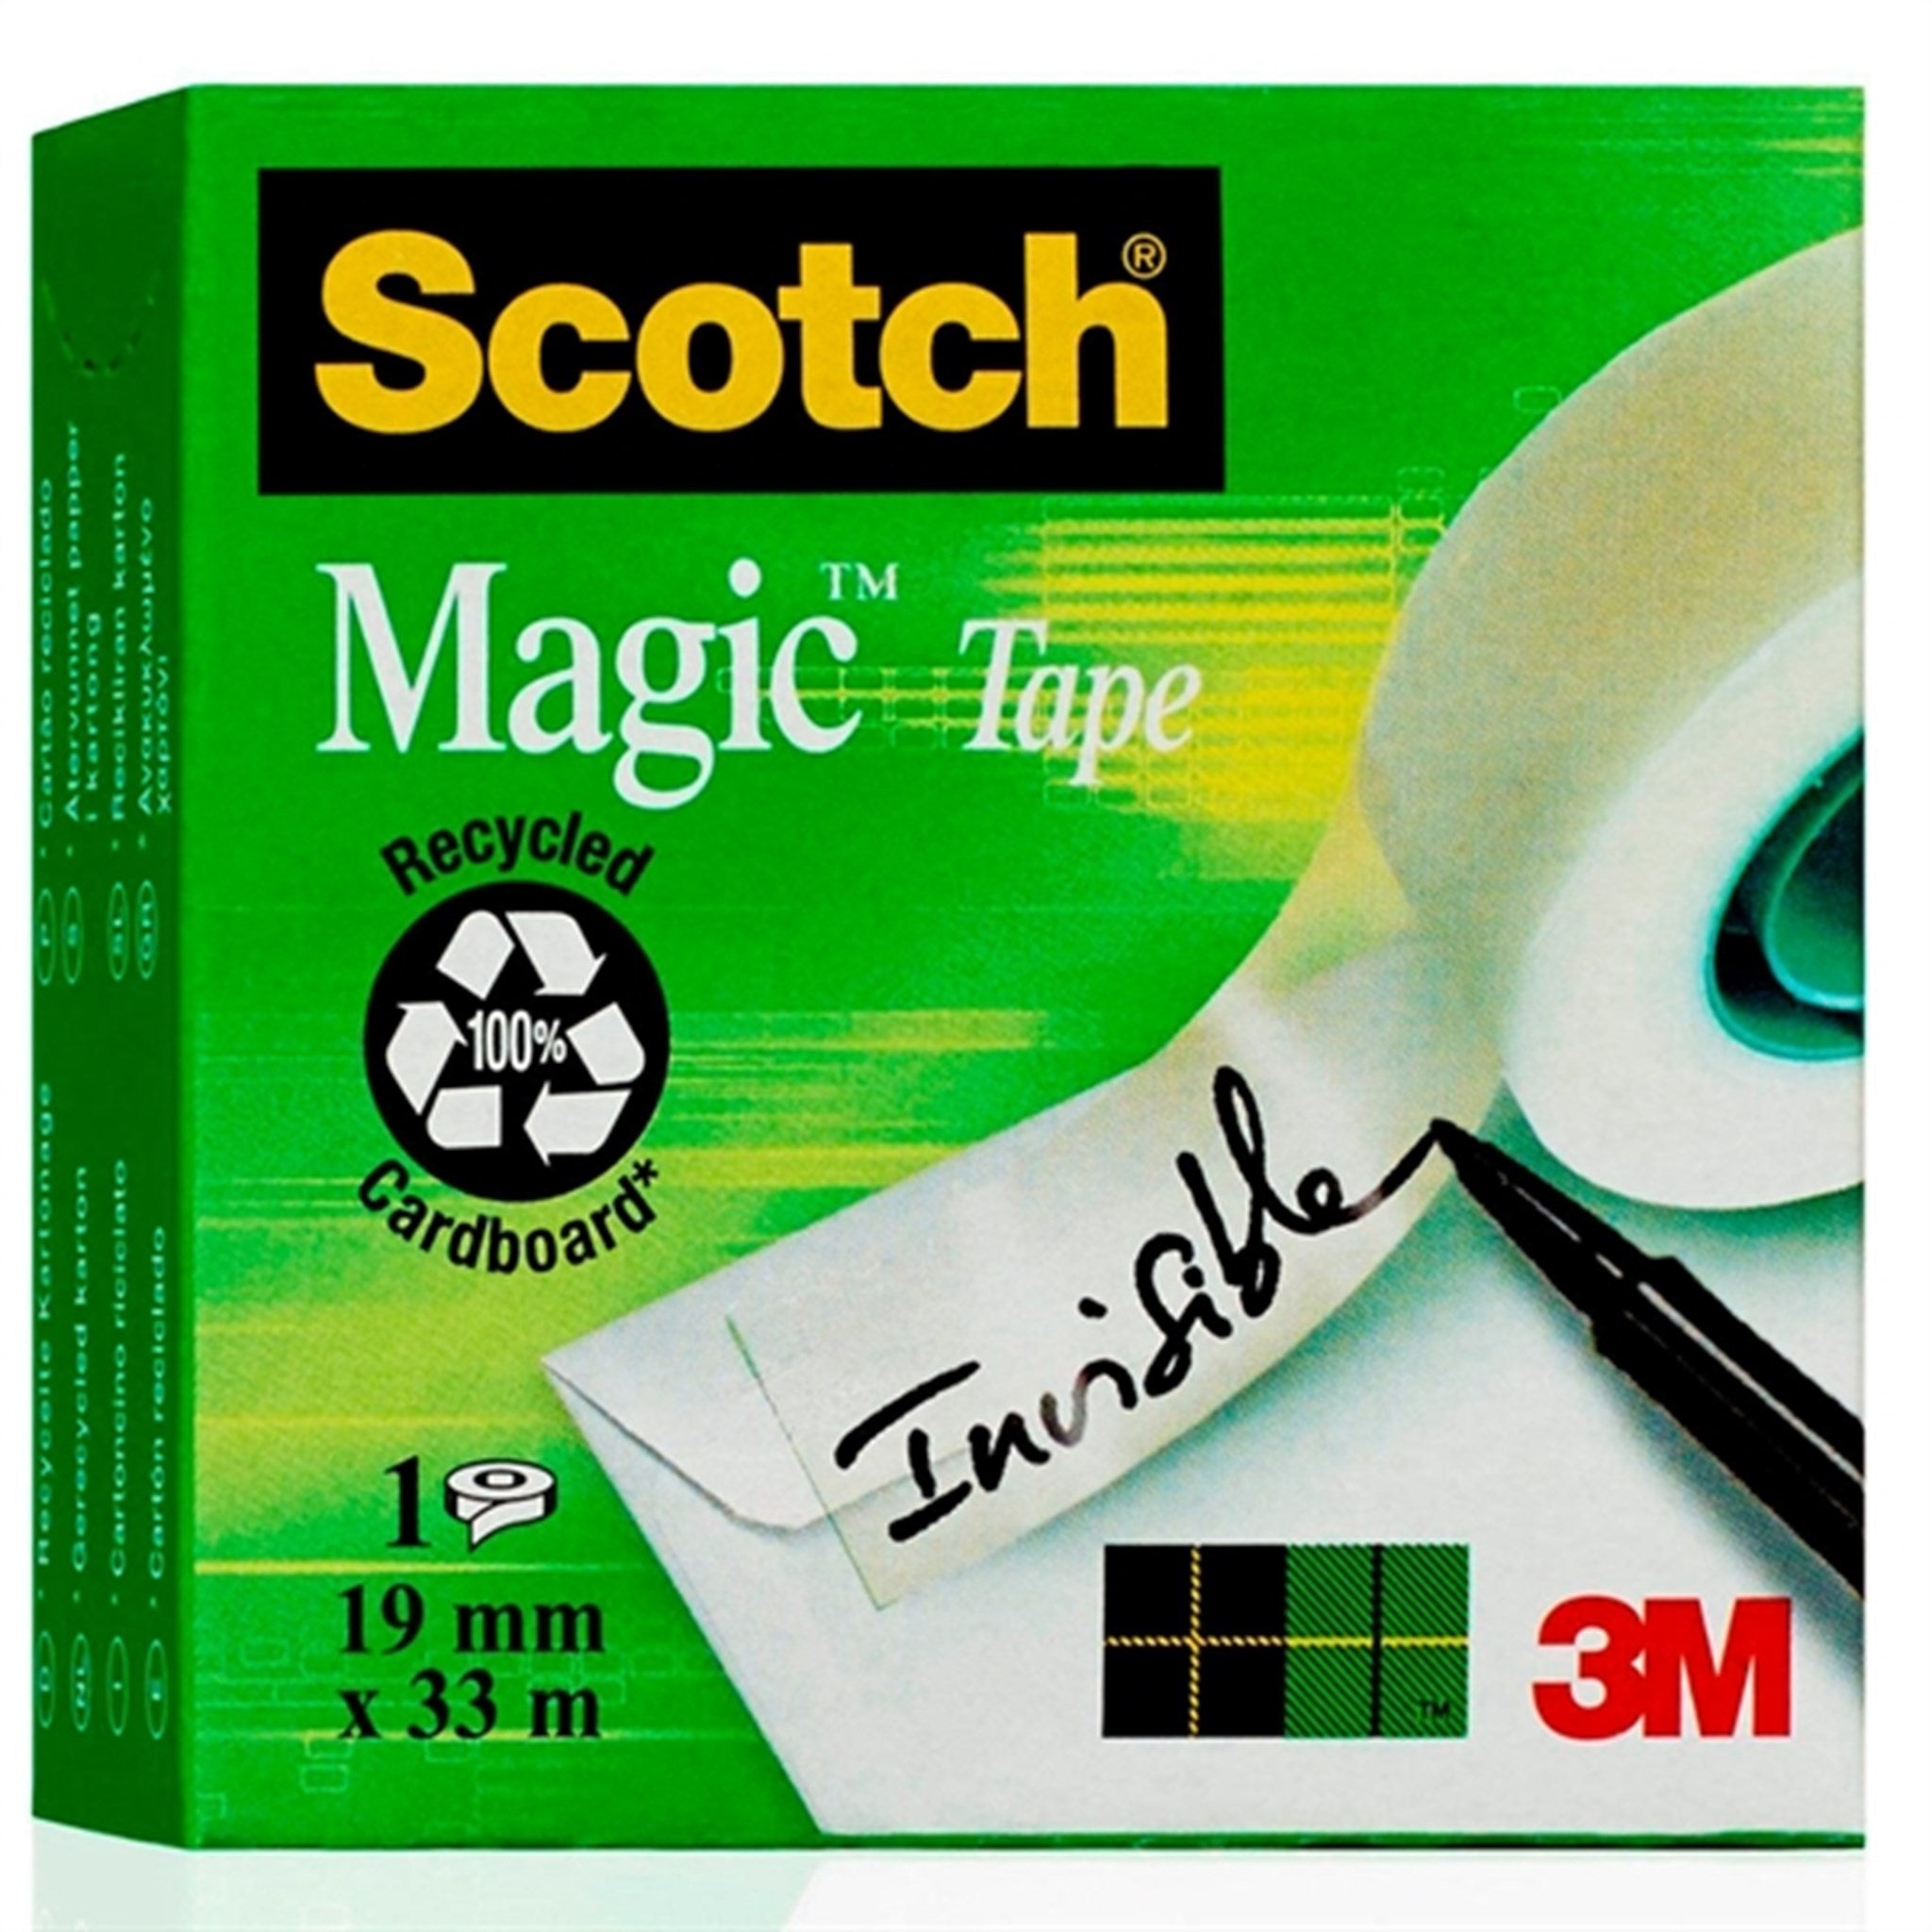 3M Tape Scotch Magic 19mmx33m 3